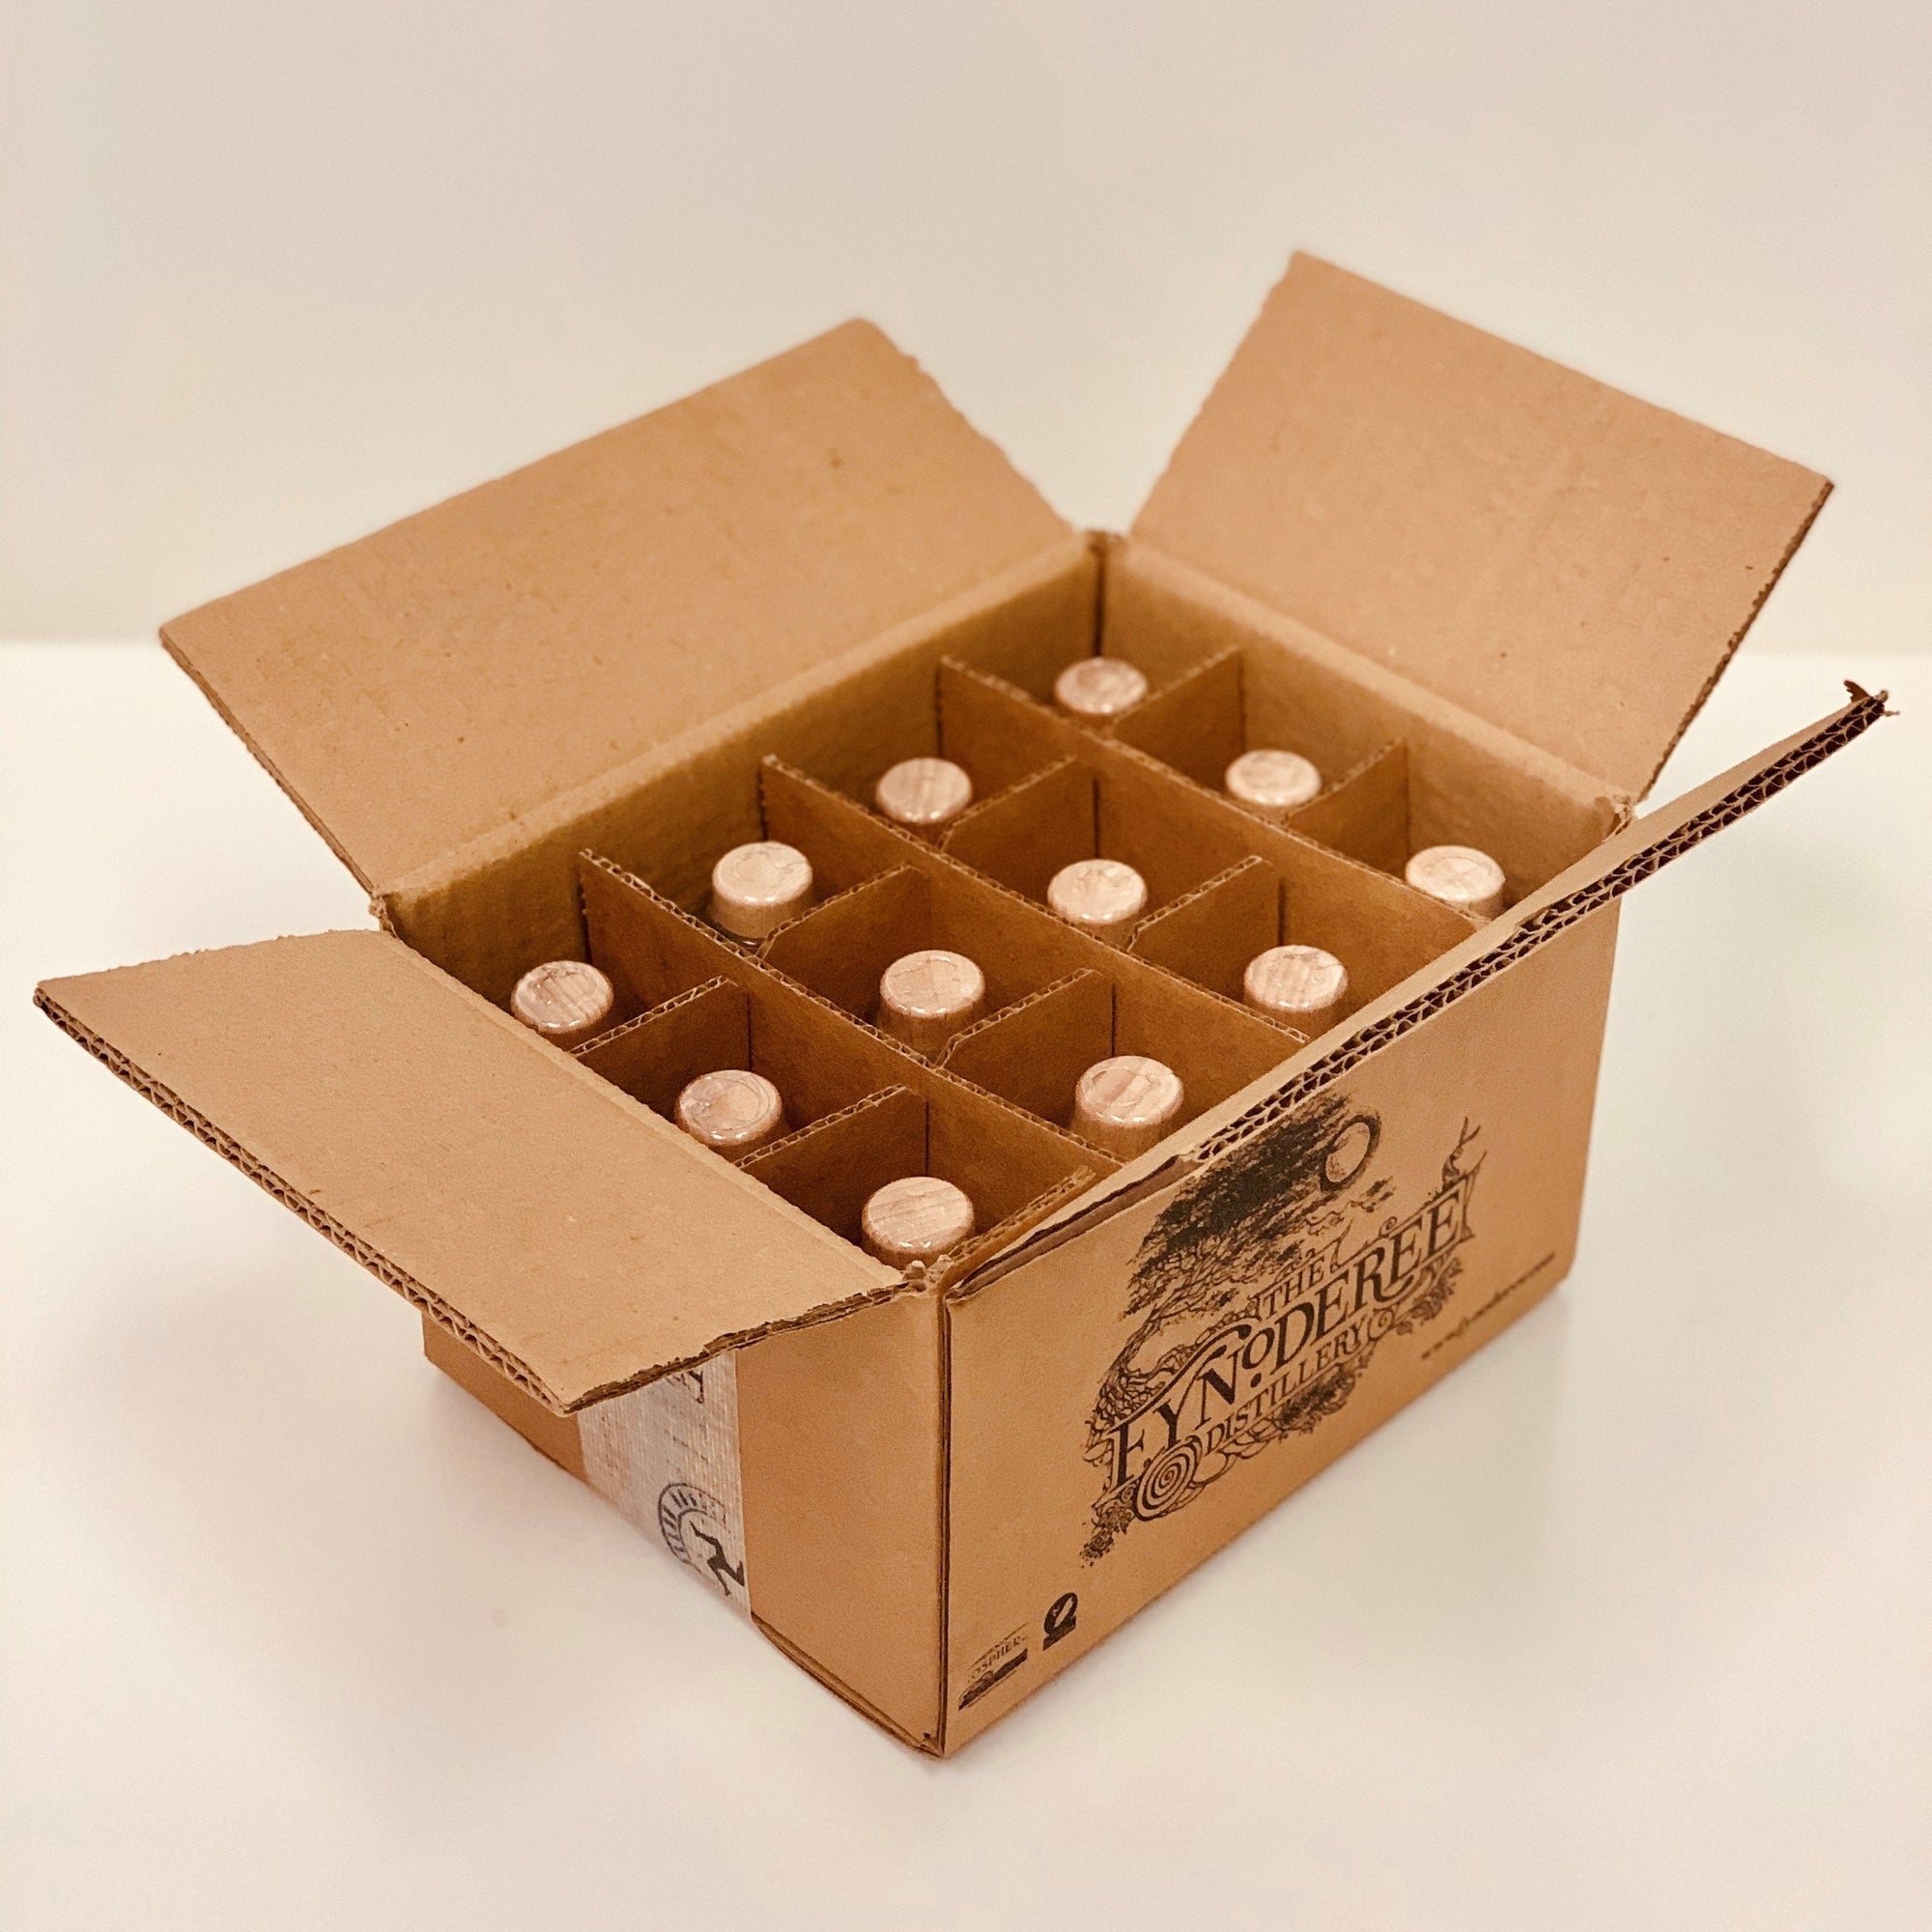 Glashtyn Spiced Manx Rum Fyniatures Case (12 x 5cl)